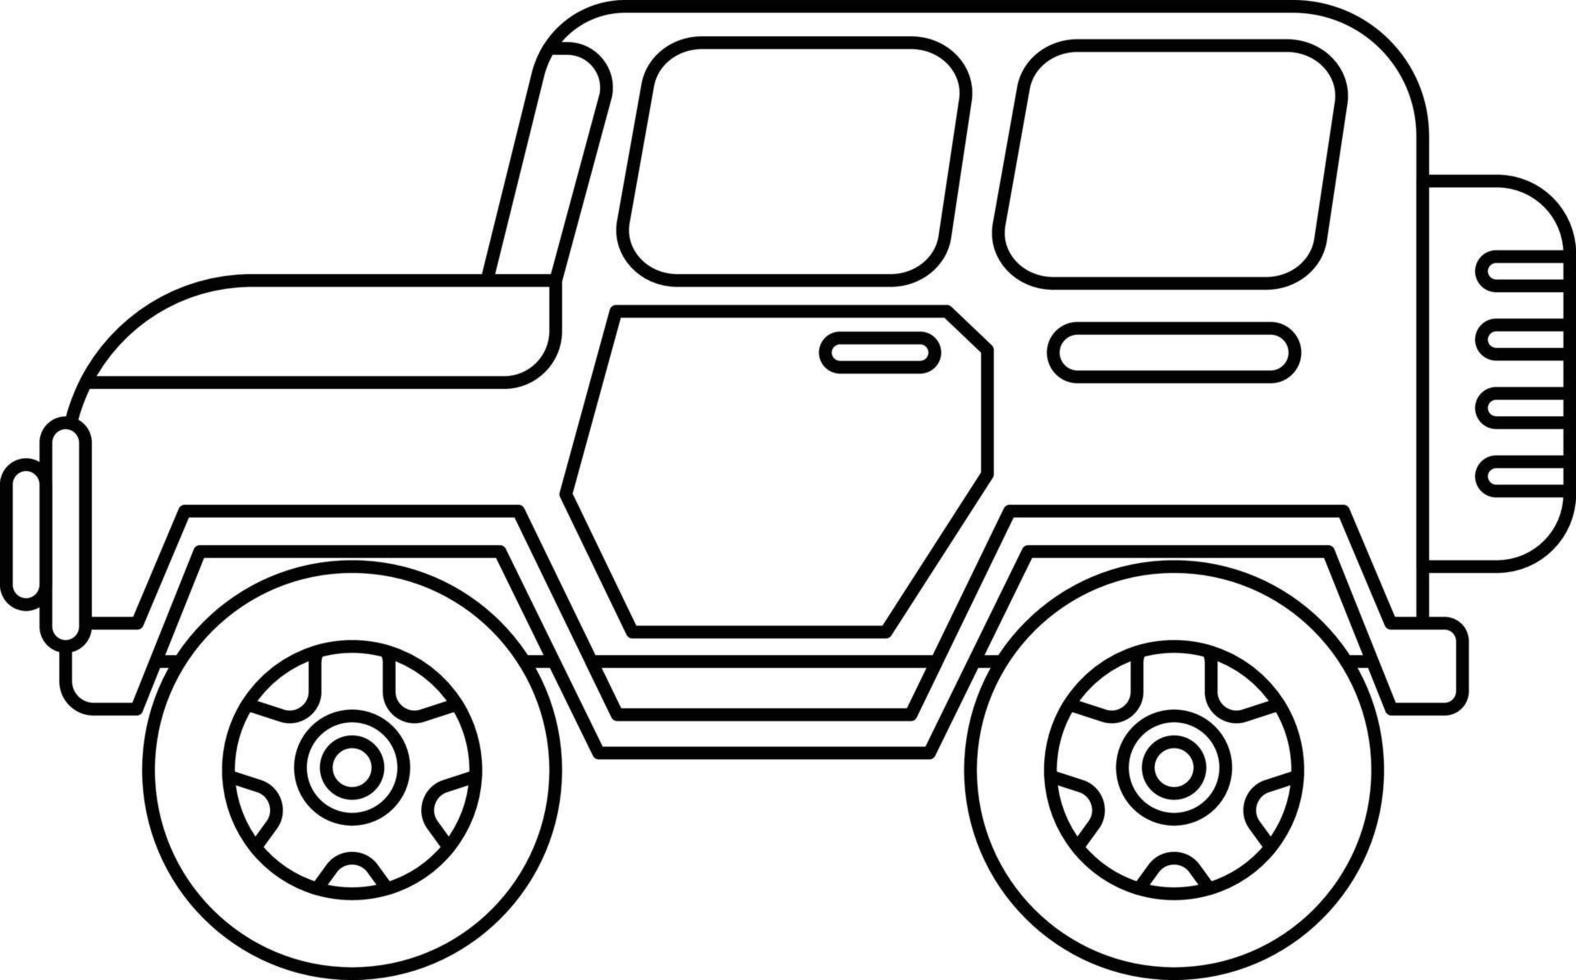 Auto-Symbol im Umriss-Stil auf einer weißen Hintergrundillustration vektor